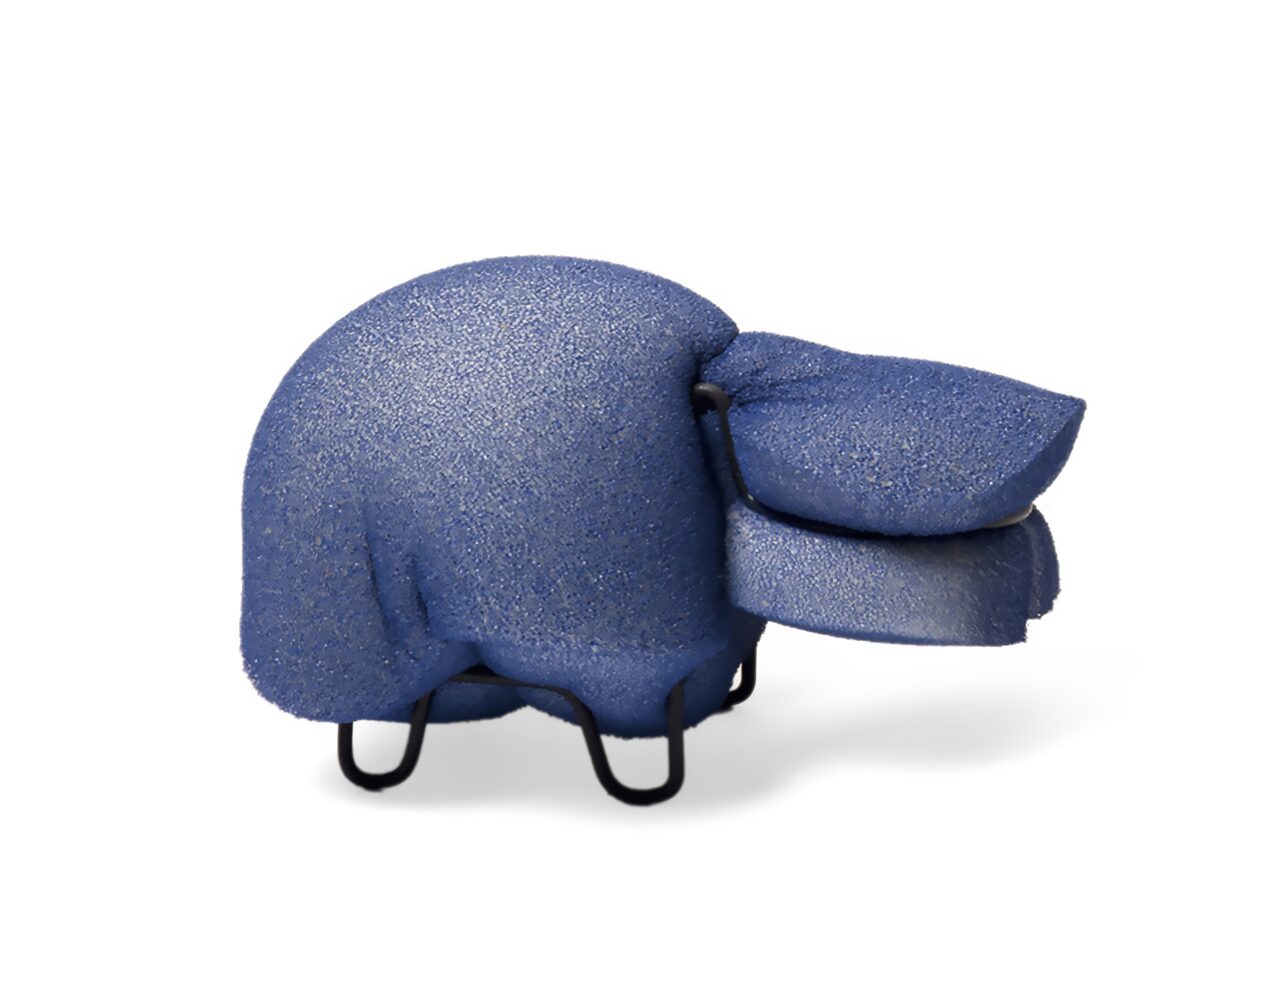 Safari : Boris l'hippopotame, armature métal et mousse. Design et fabrication Suisse par Bertille Laguet.